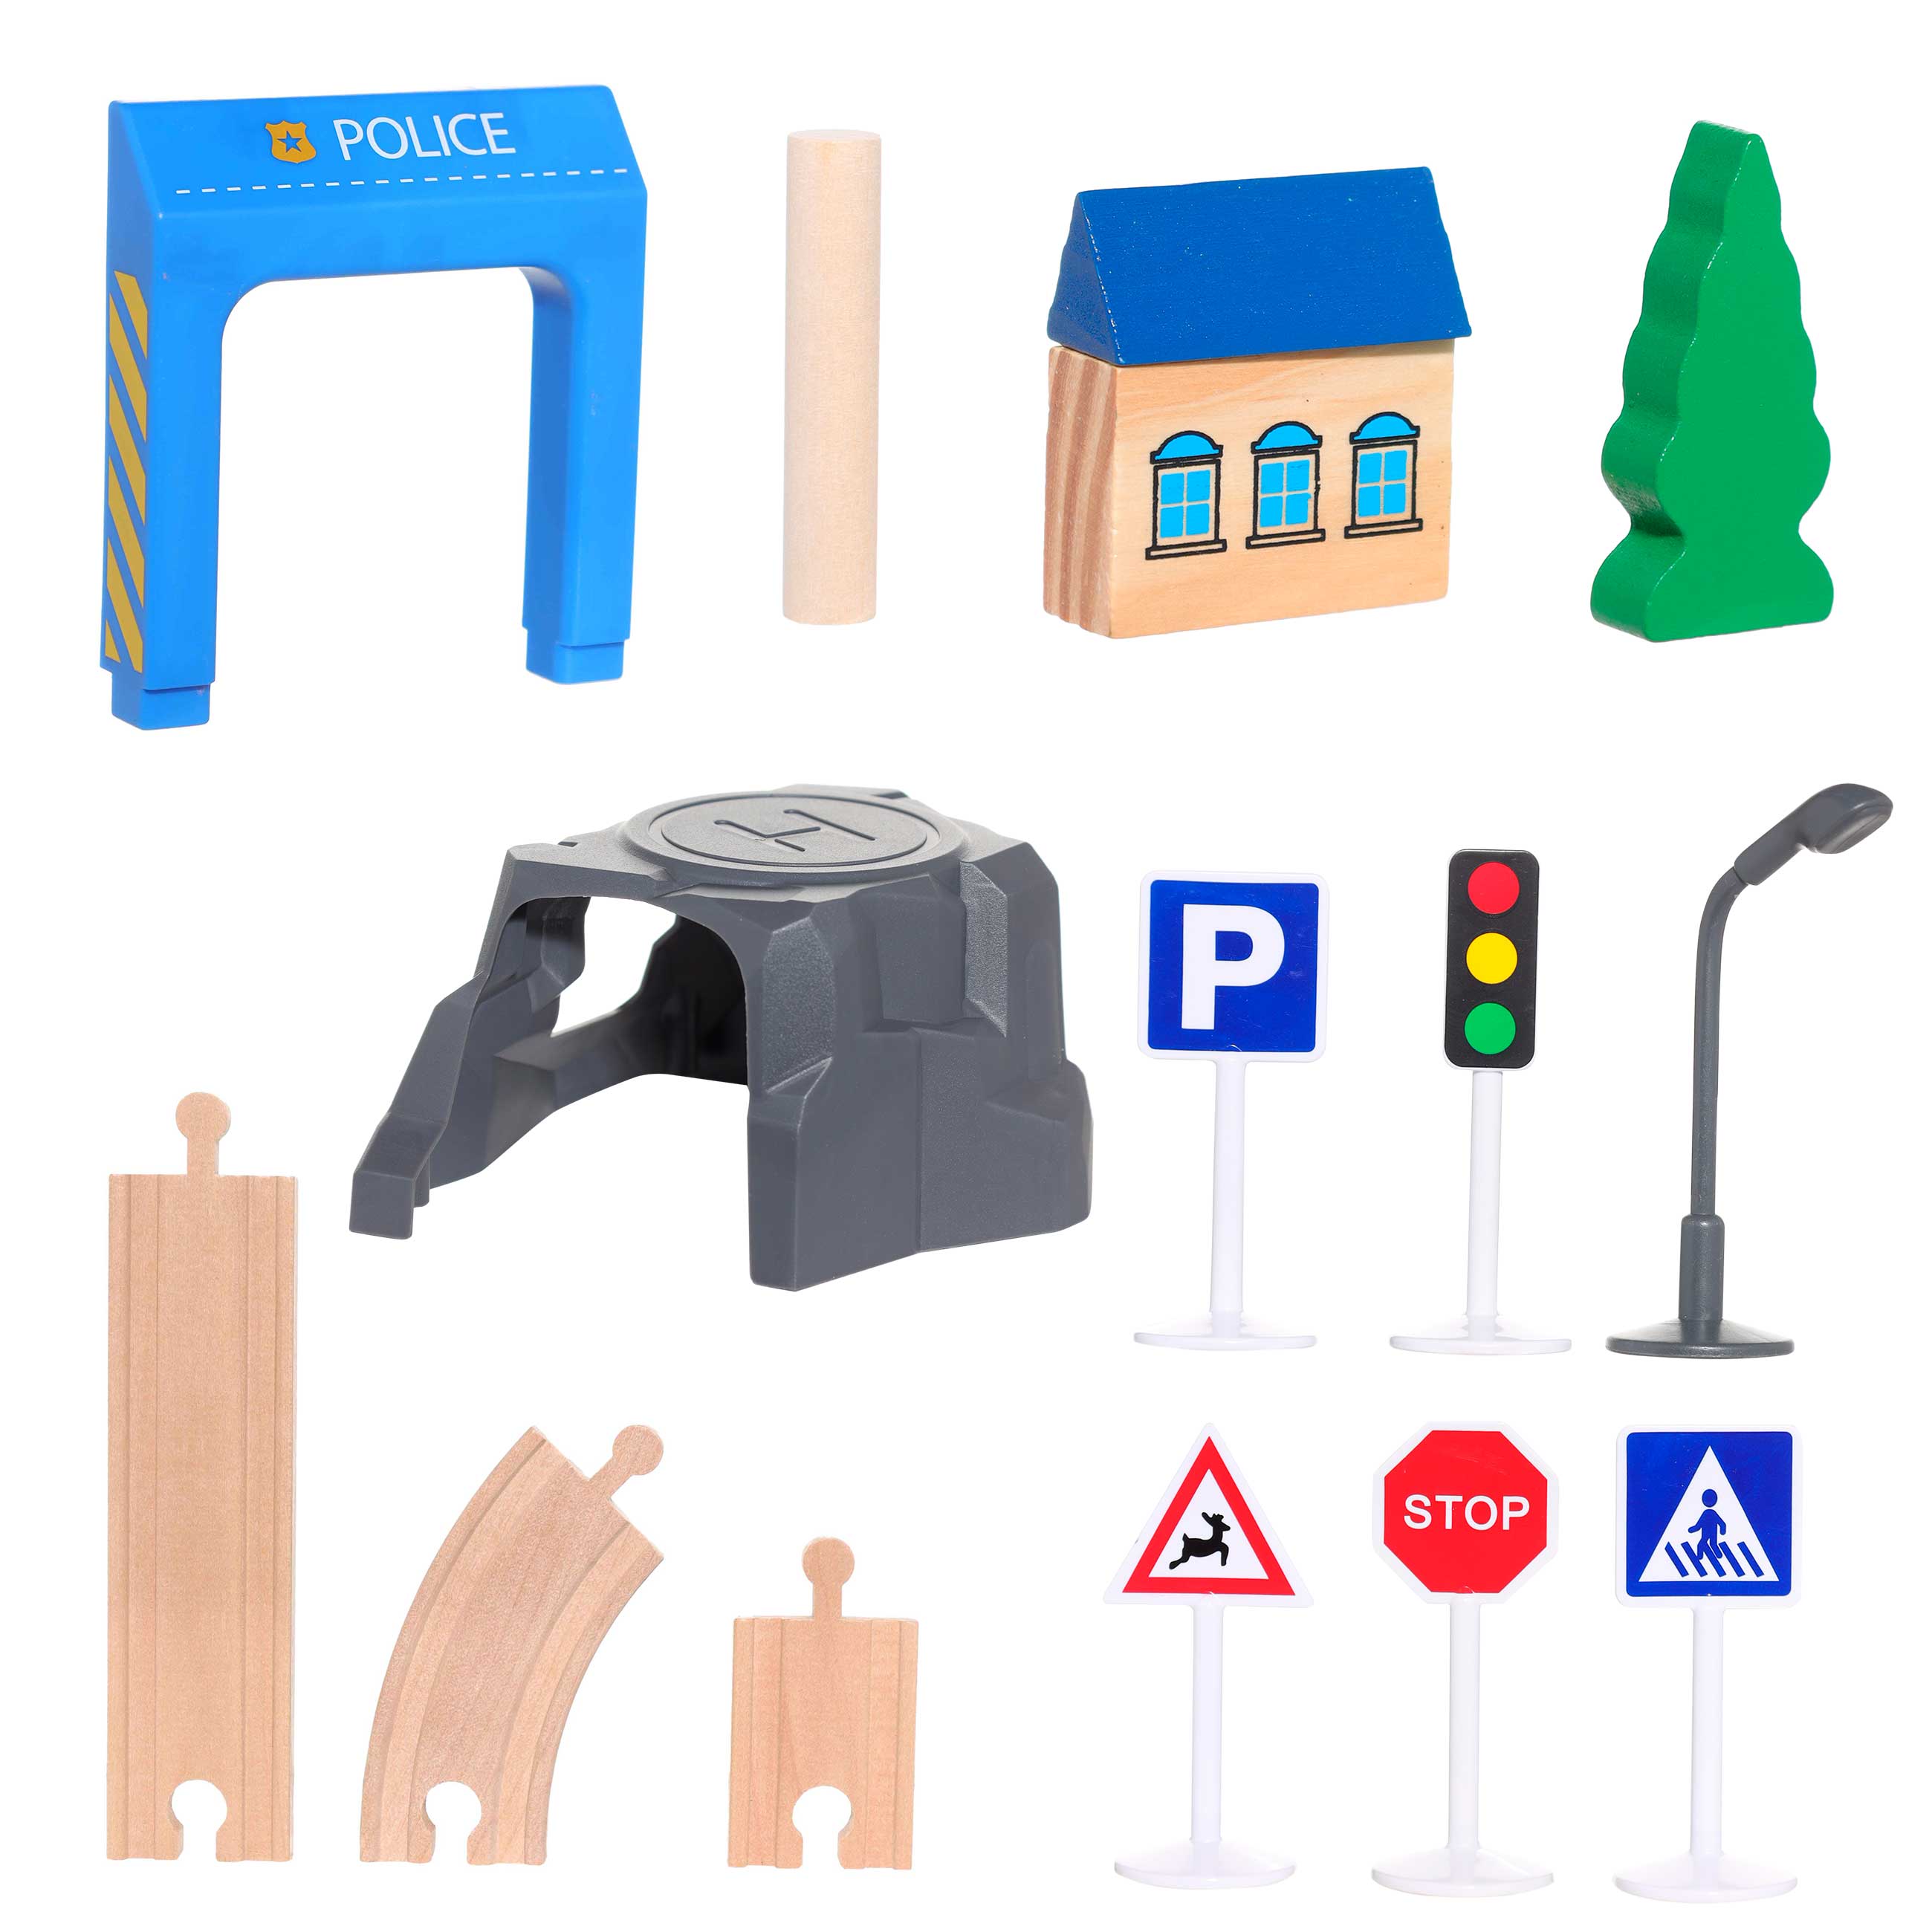 Железная дорога игрушечная, 98 см, дерево/пластик, Электропоезд, Game rail изображение № 2